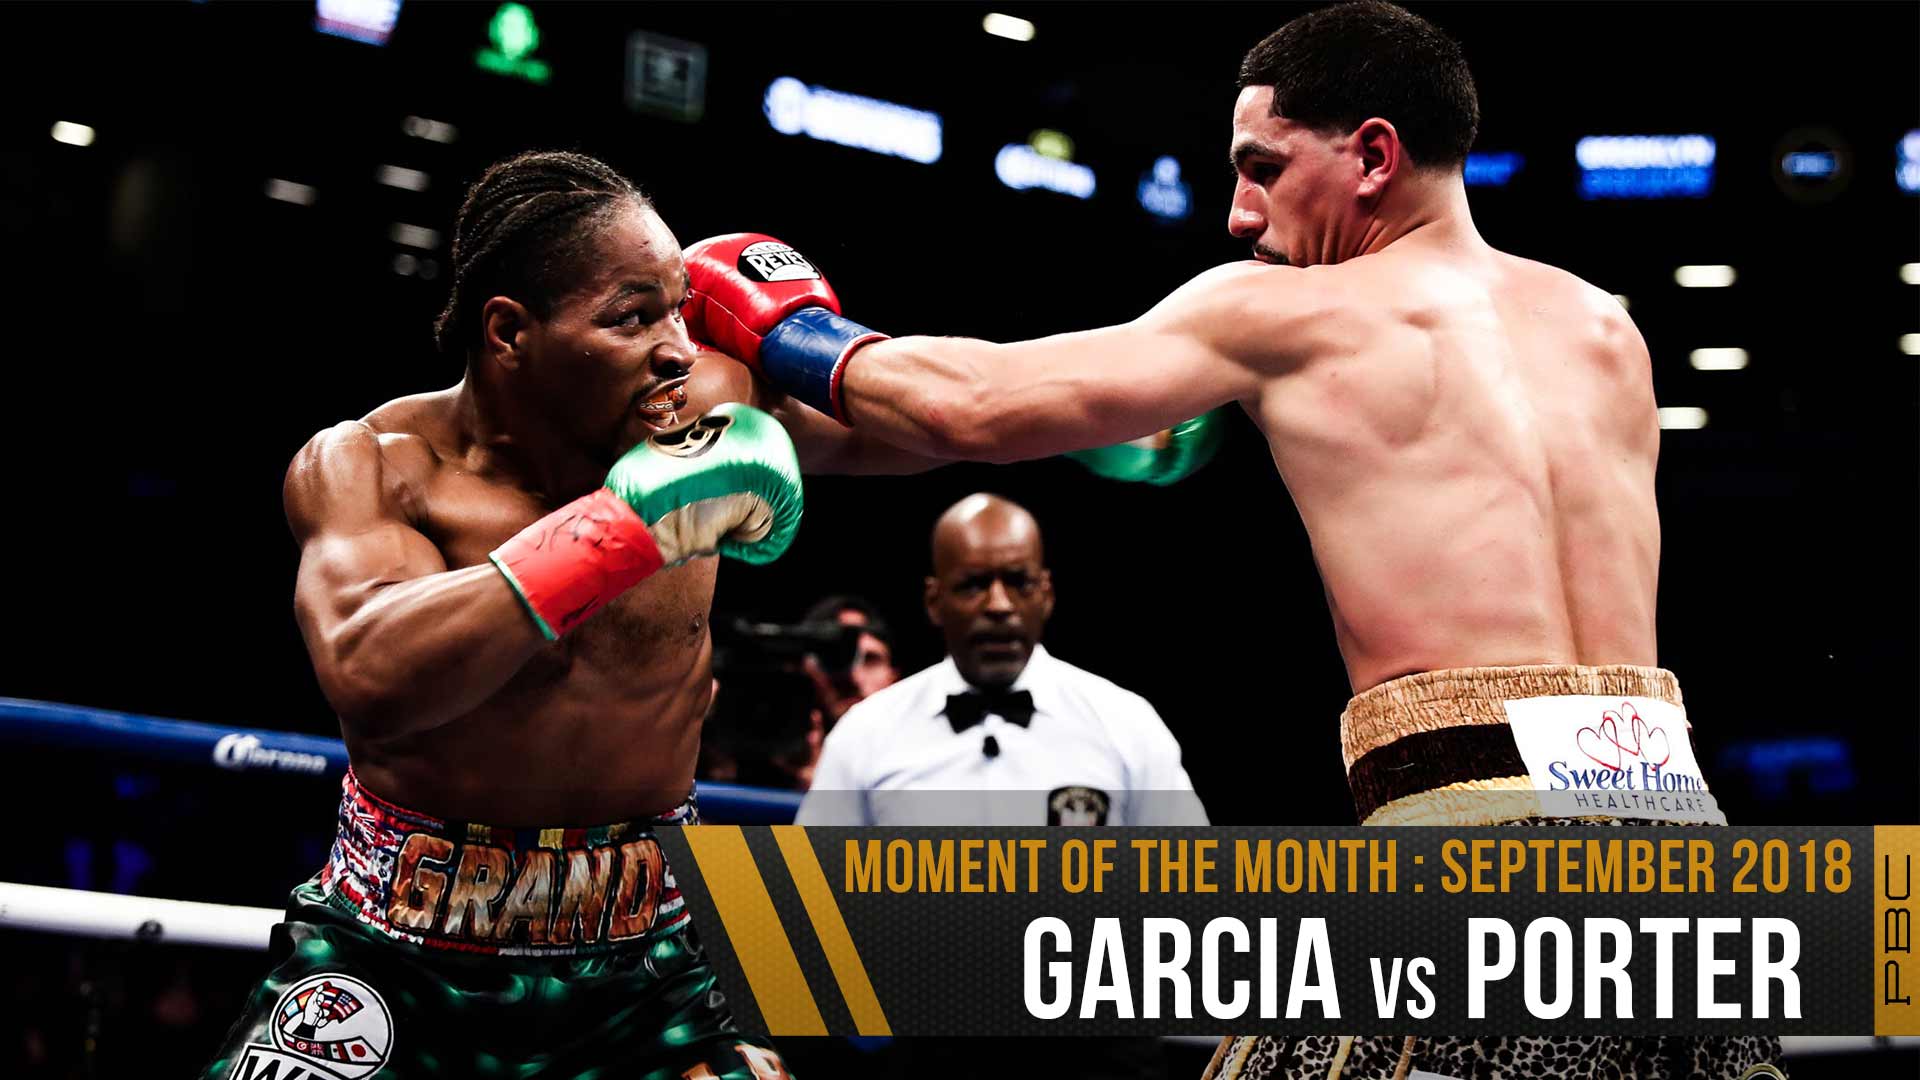 September 2018 Moment of the Month: Garcia vs Porter